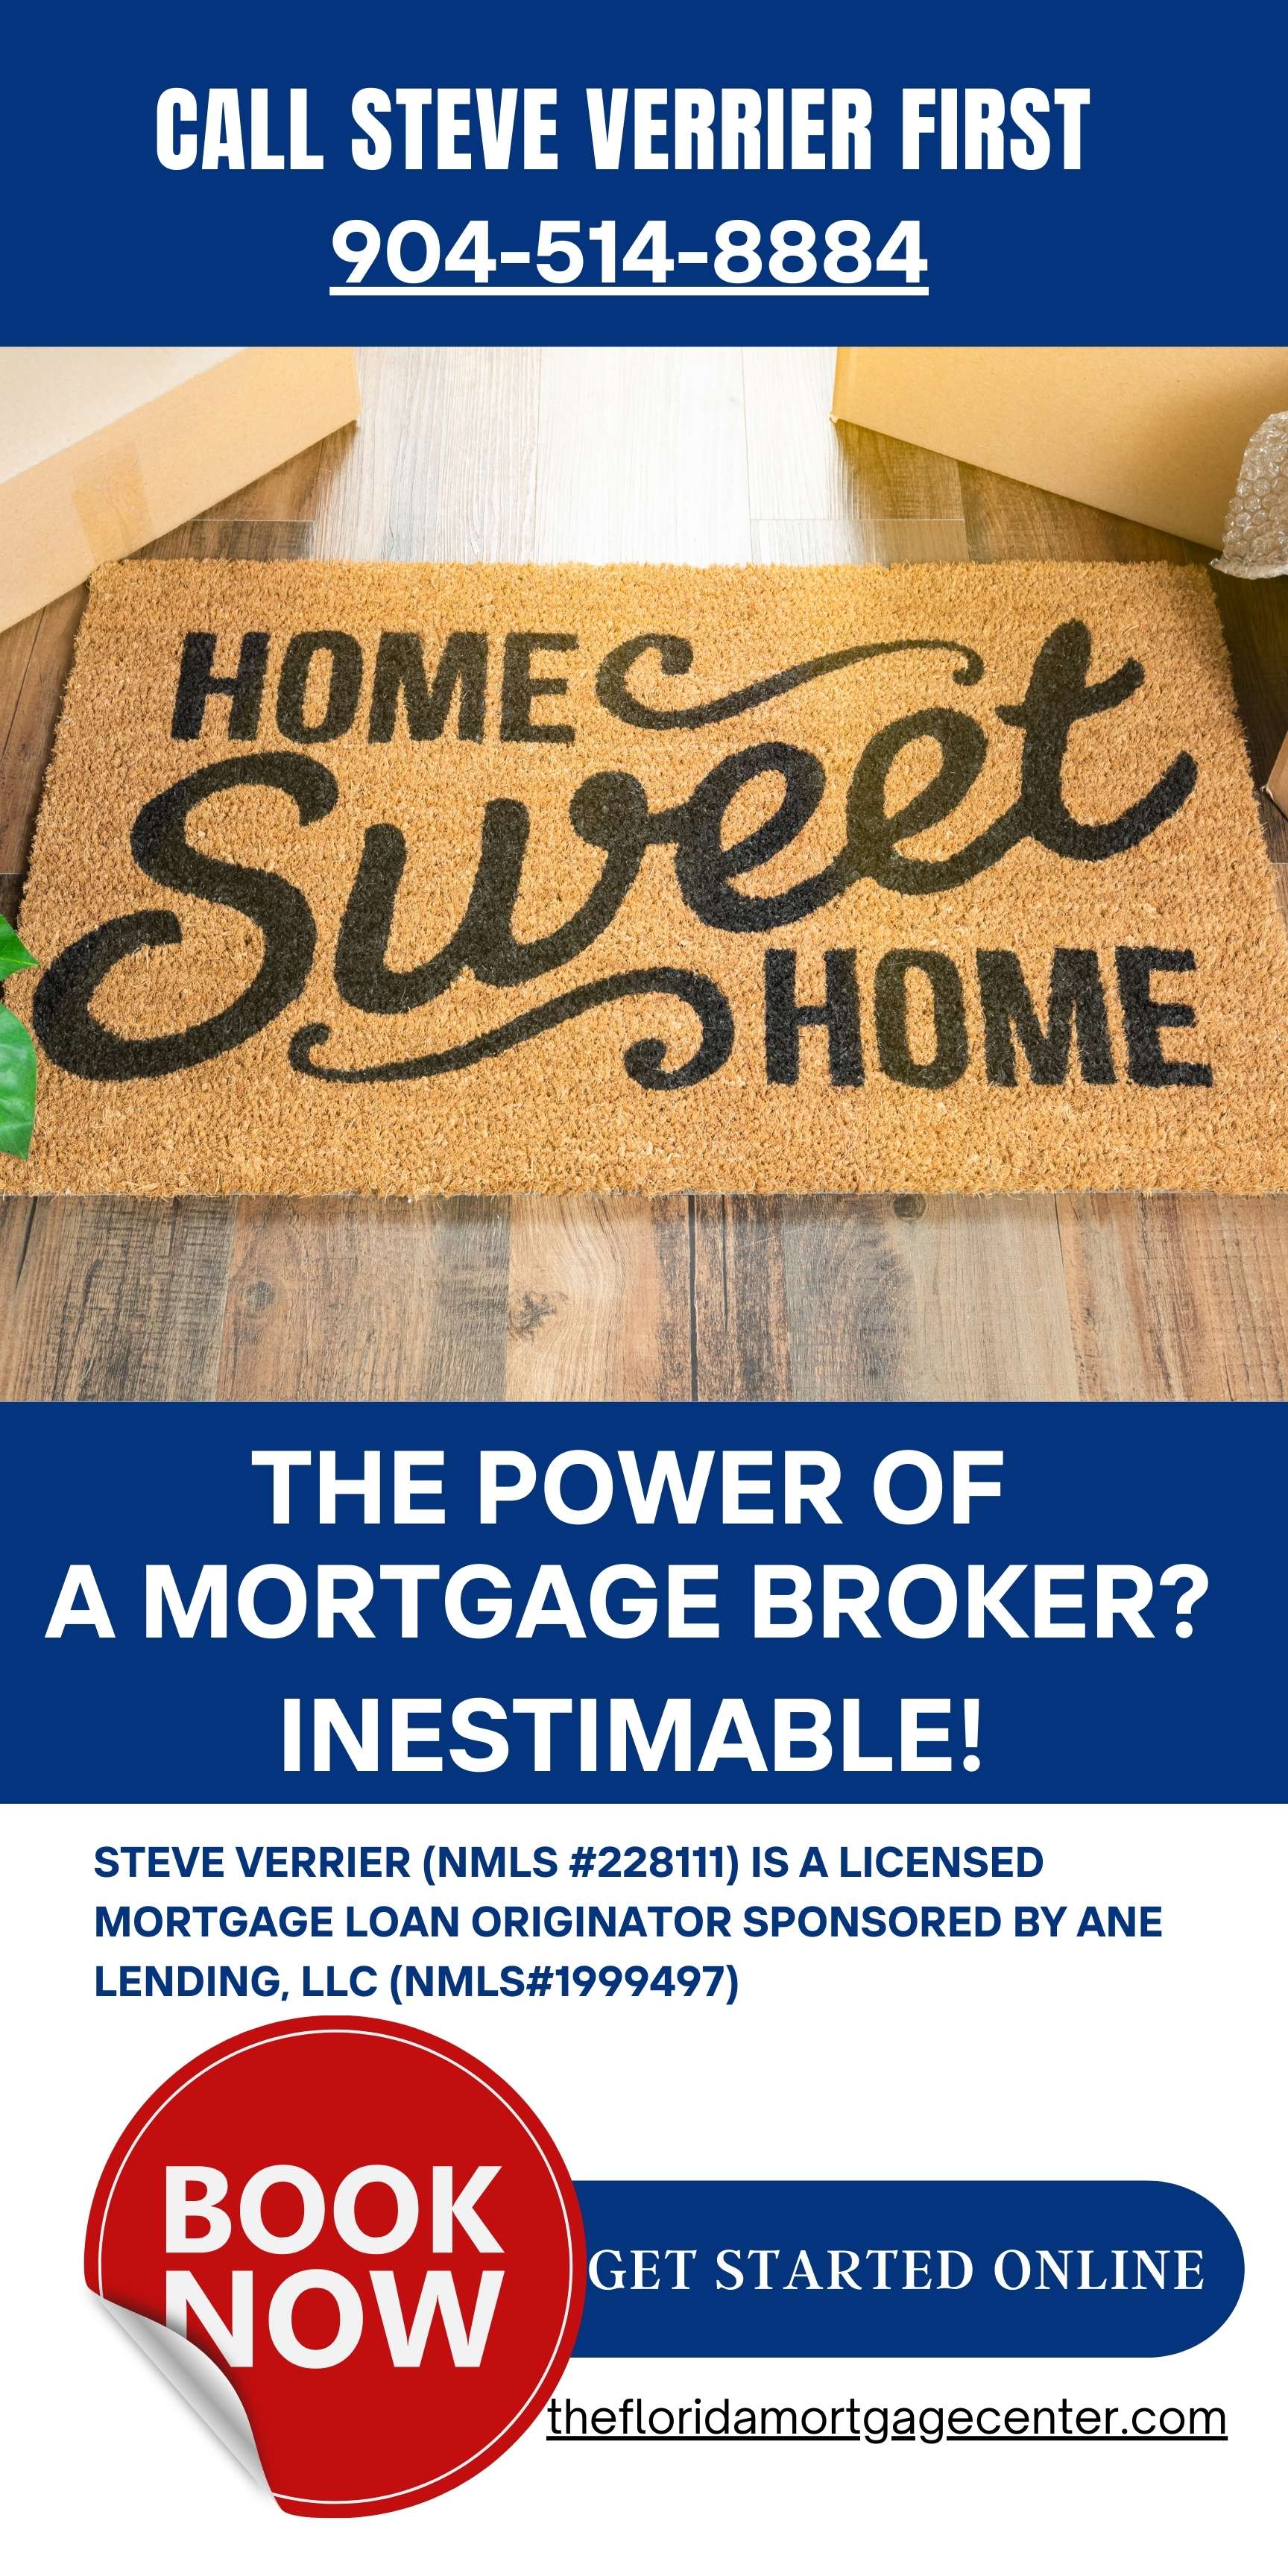 Steve Verrier Mortgage Broker